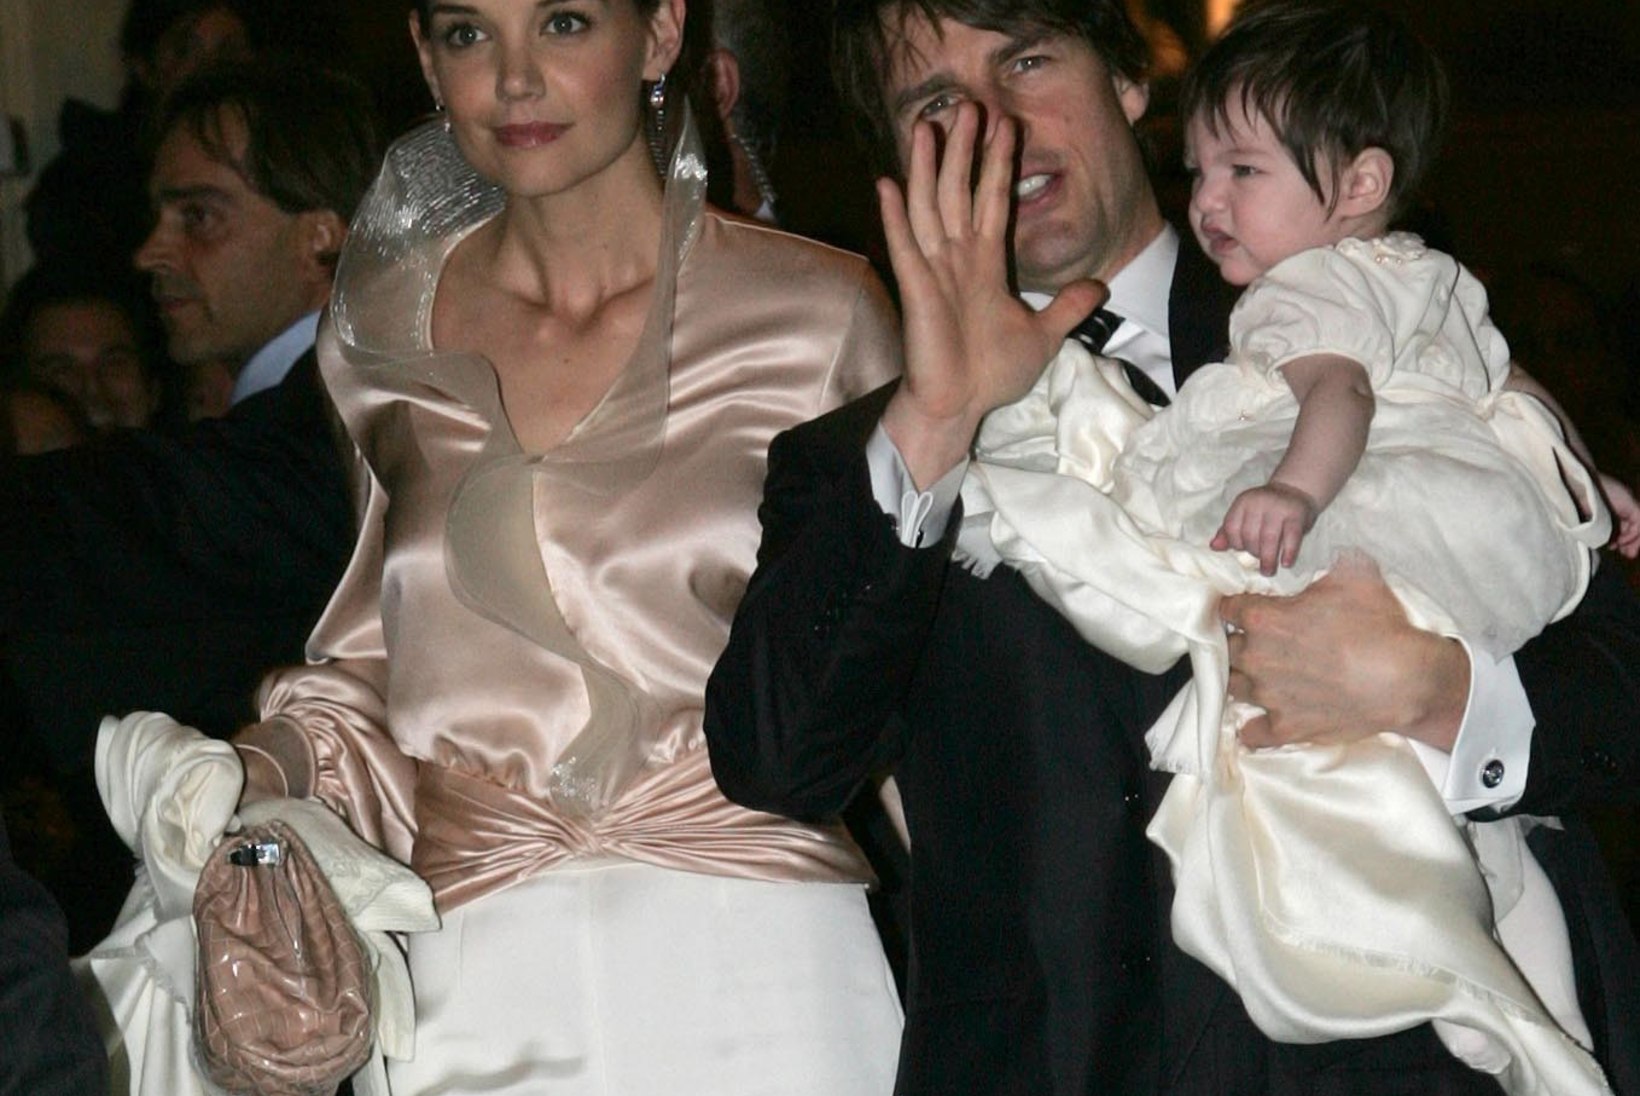 ENDISE SAIENTOLOOGI PALJASTUSED: "Tom Cruise jättis oma pulmas pisitütre WC-põrandale nutma."